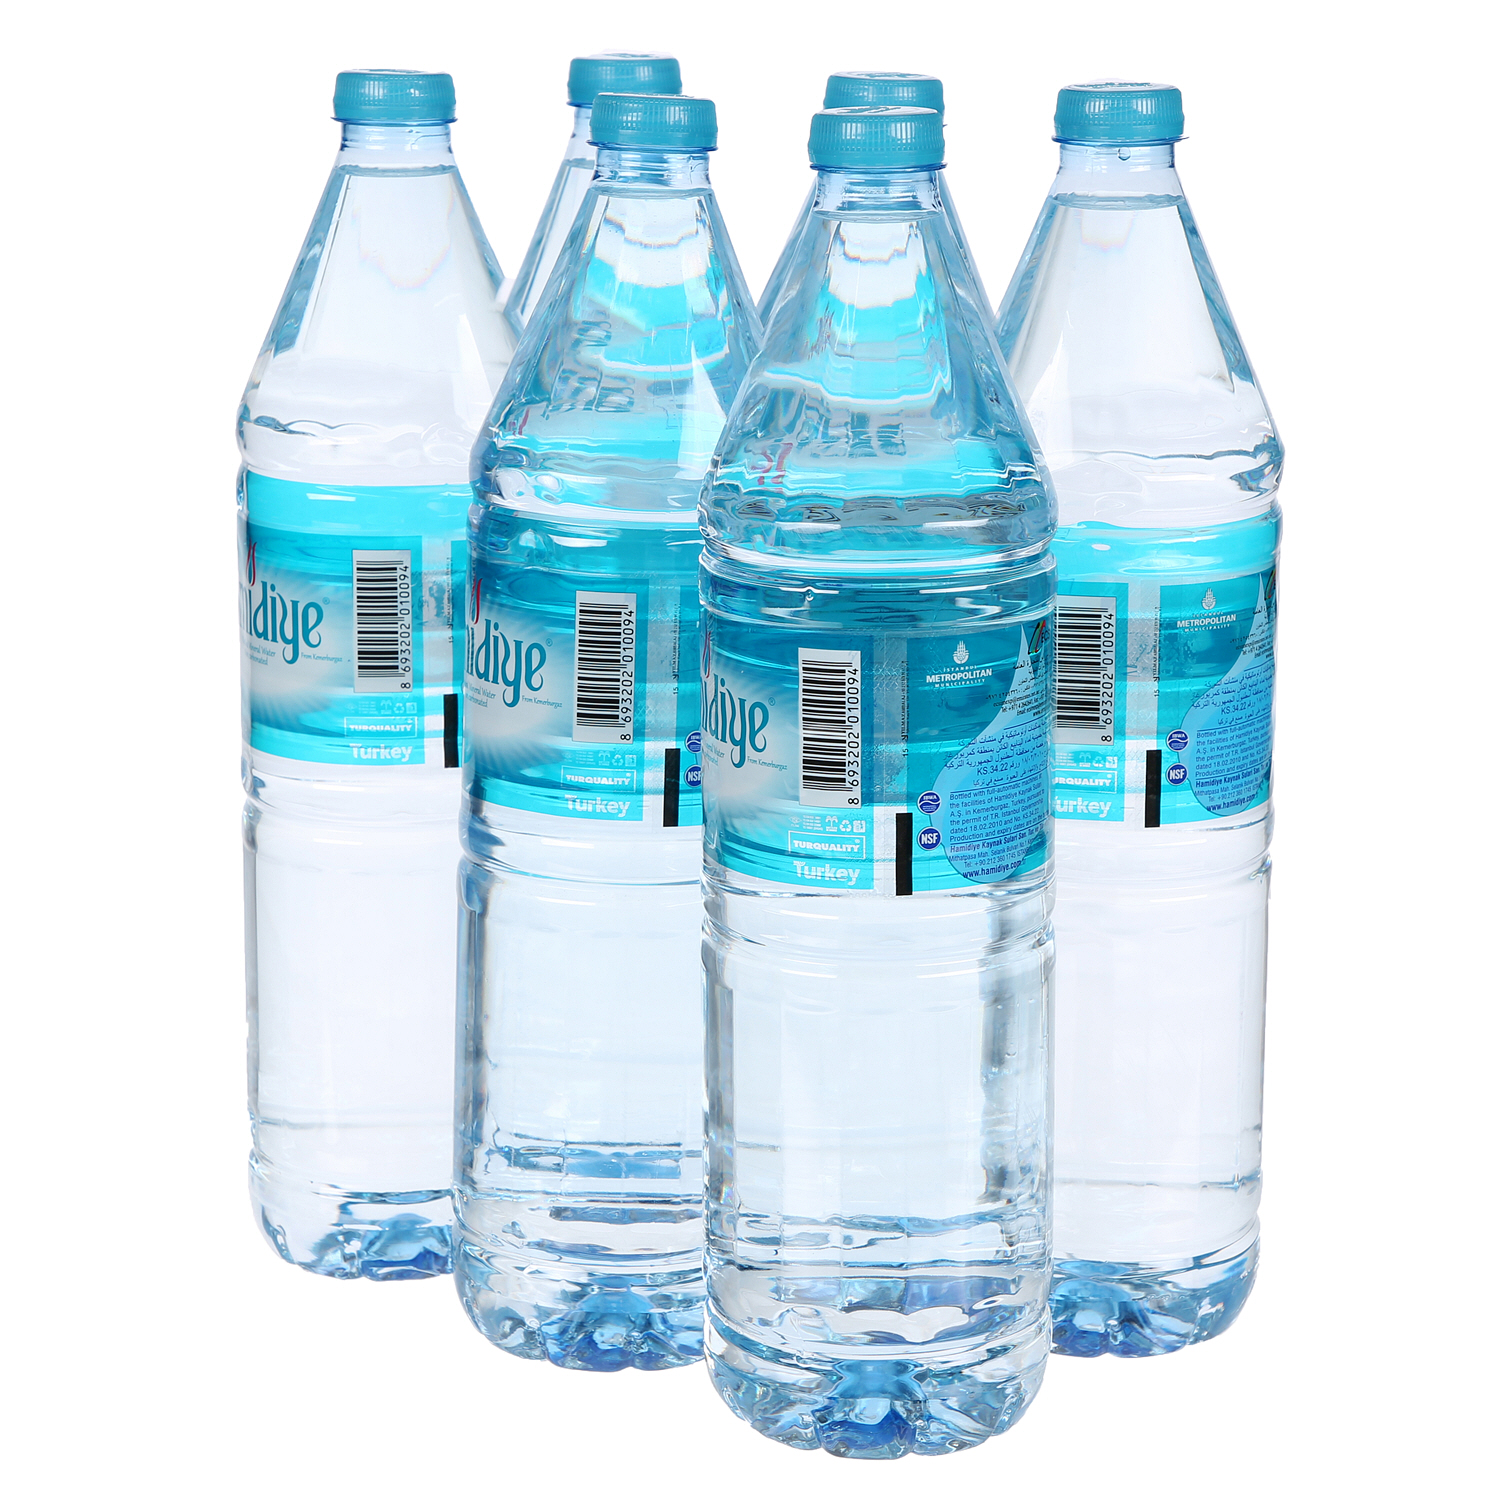 Hamidiya Natural Spring Water 1.5 L × 6 Pack